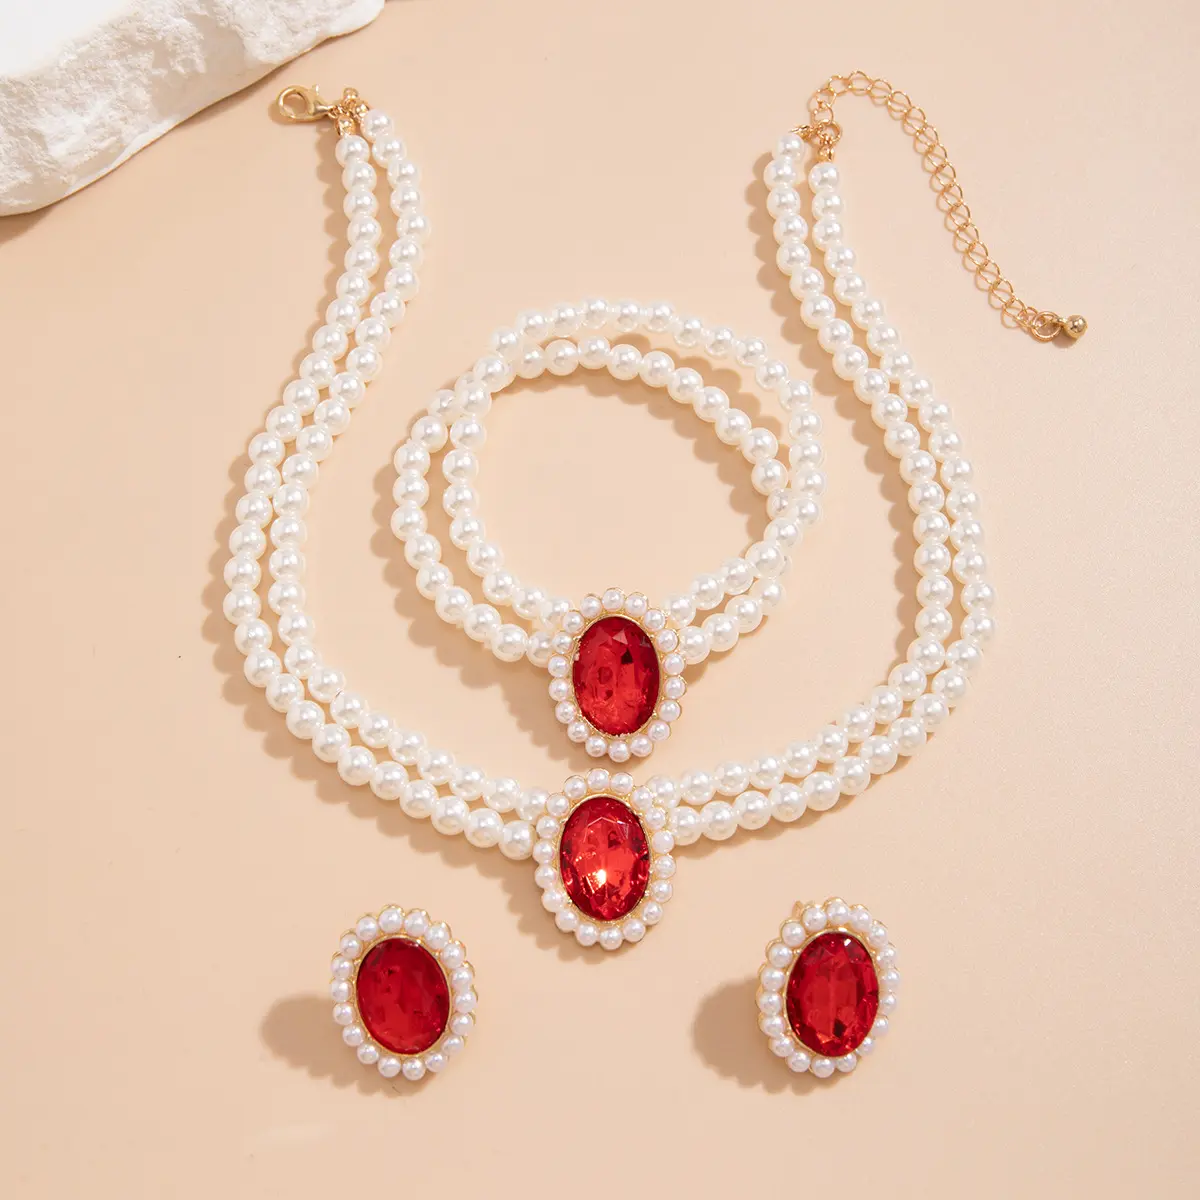 Mehr schicht ige Vintage Imitation Pearl Türkis Perlenkette Choker Halskette für Frauen Trendy Strass Ohrring Set Zubehör